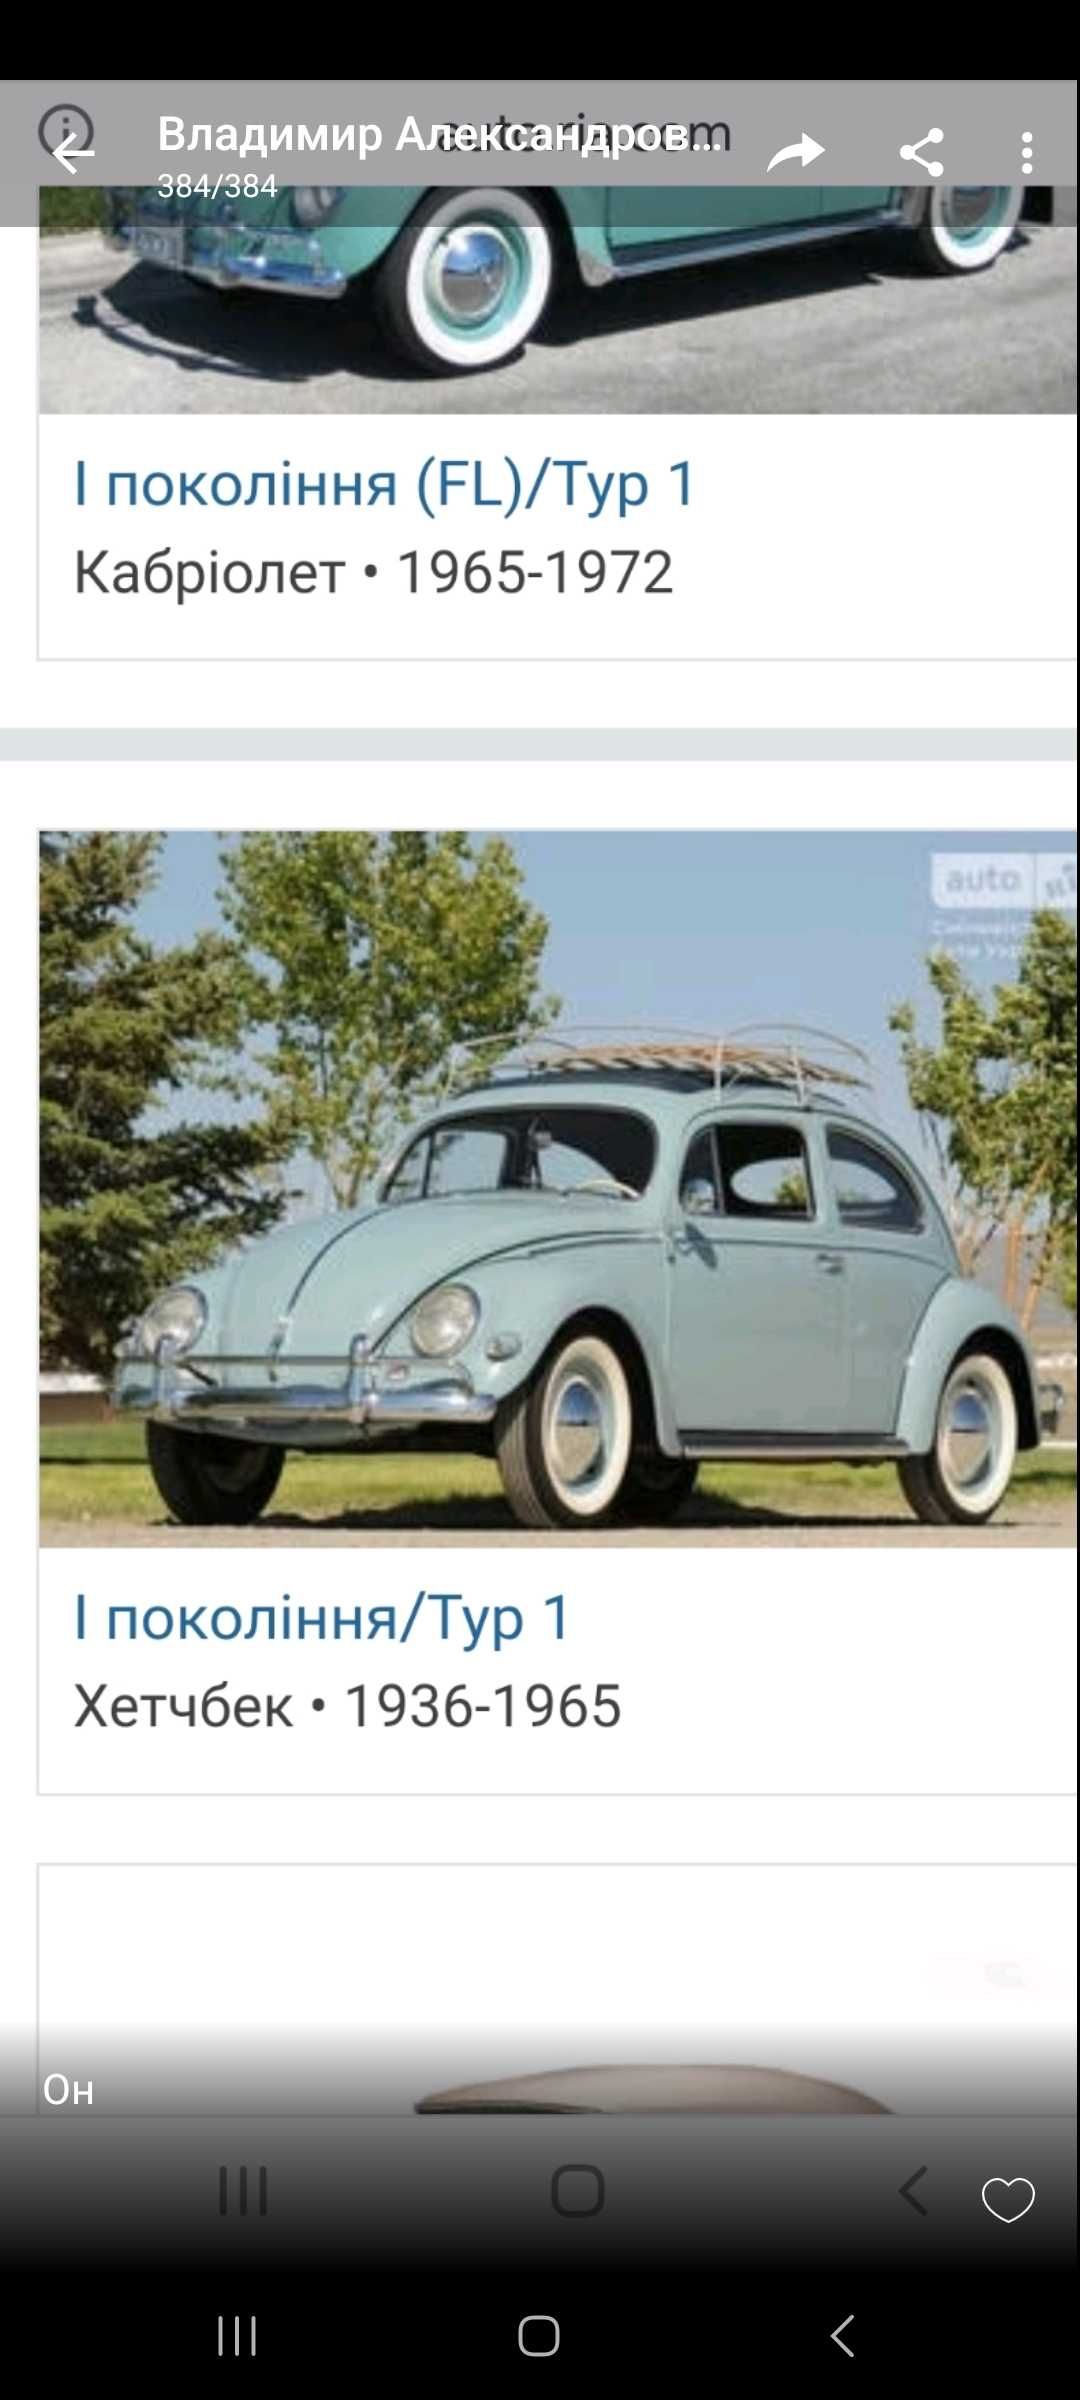 Продам раритетные запчасти кузова на Volkswagen Beet 1935-1975 гв